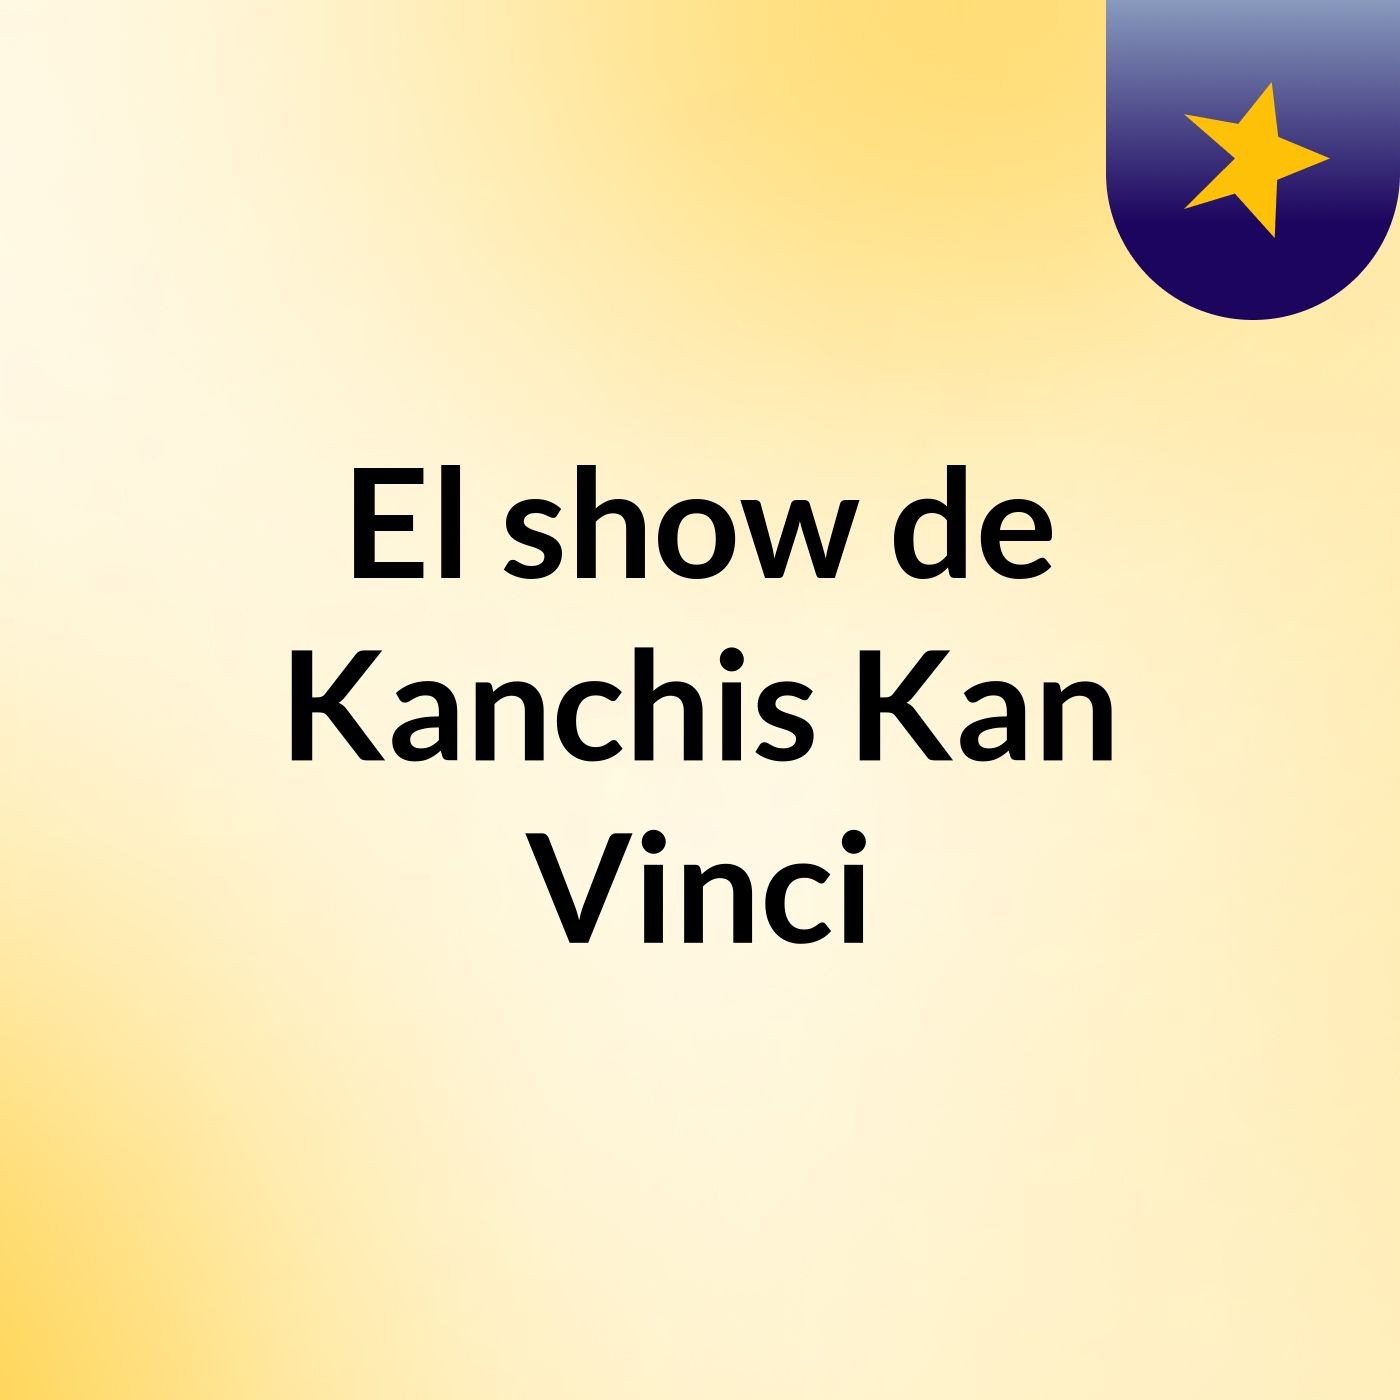 Episodio 2 - El show de Kanchis Kan Vinci